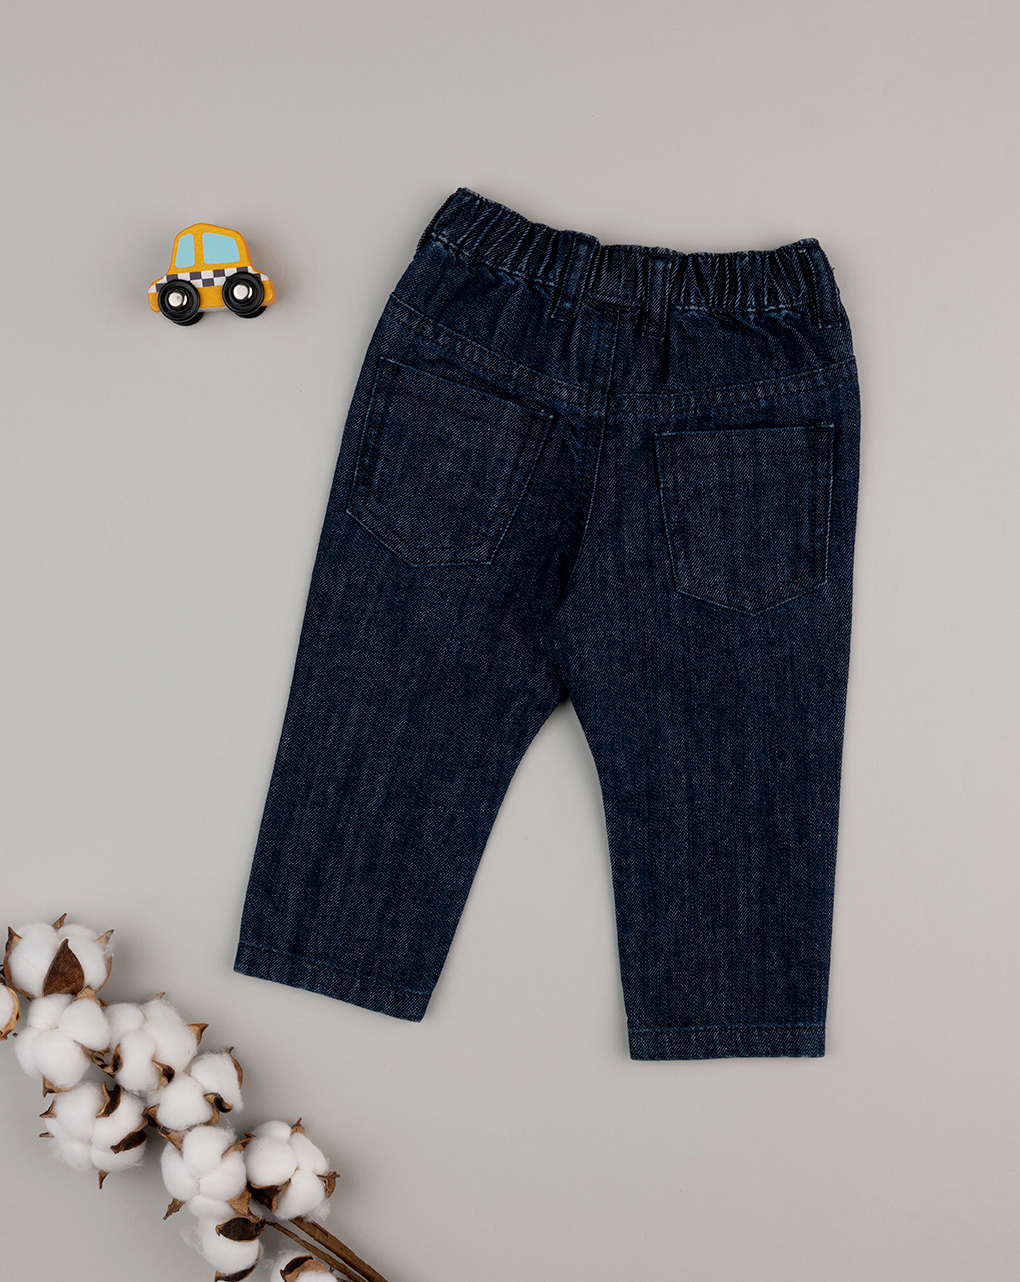 βρεφικό τζιν παντελόνι σκούρο μπλε για αγόρι - Prénatal